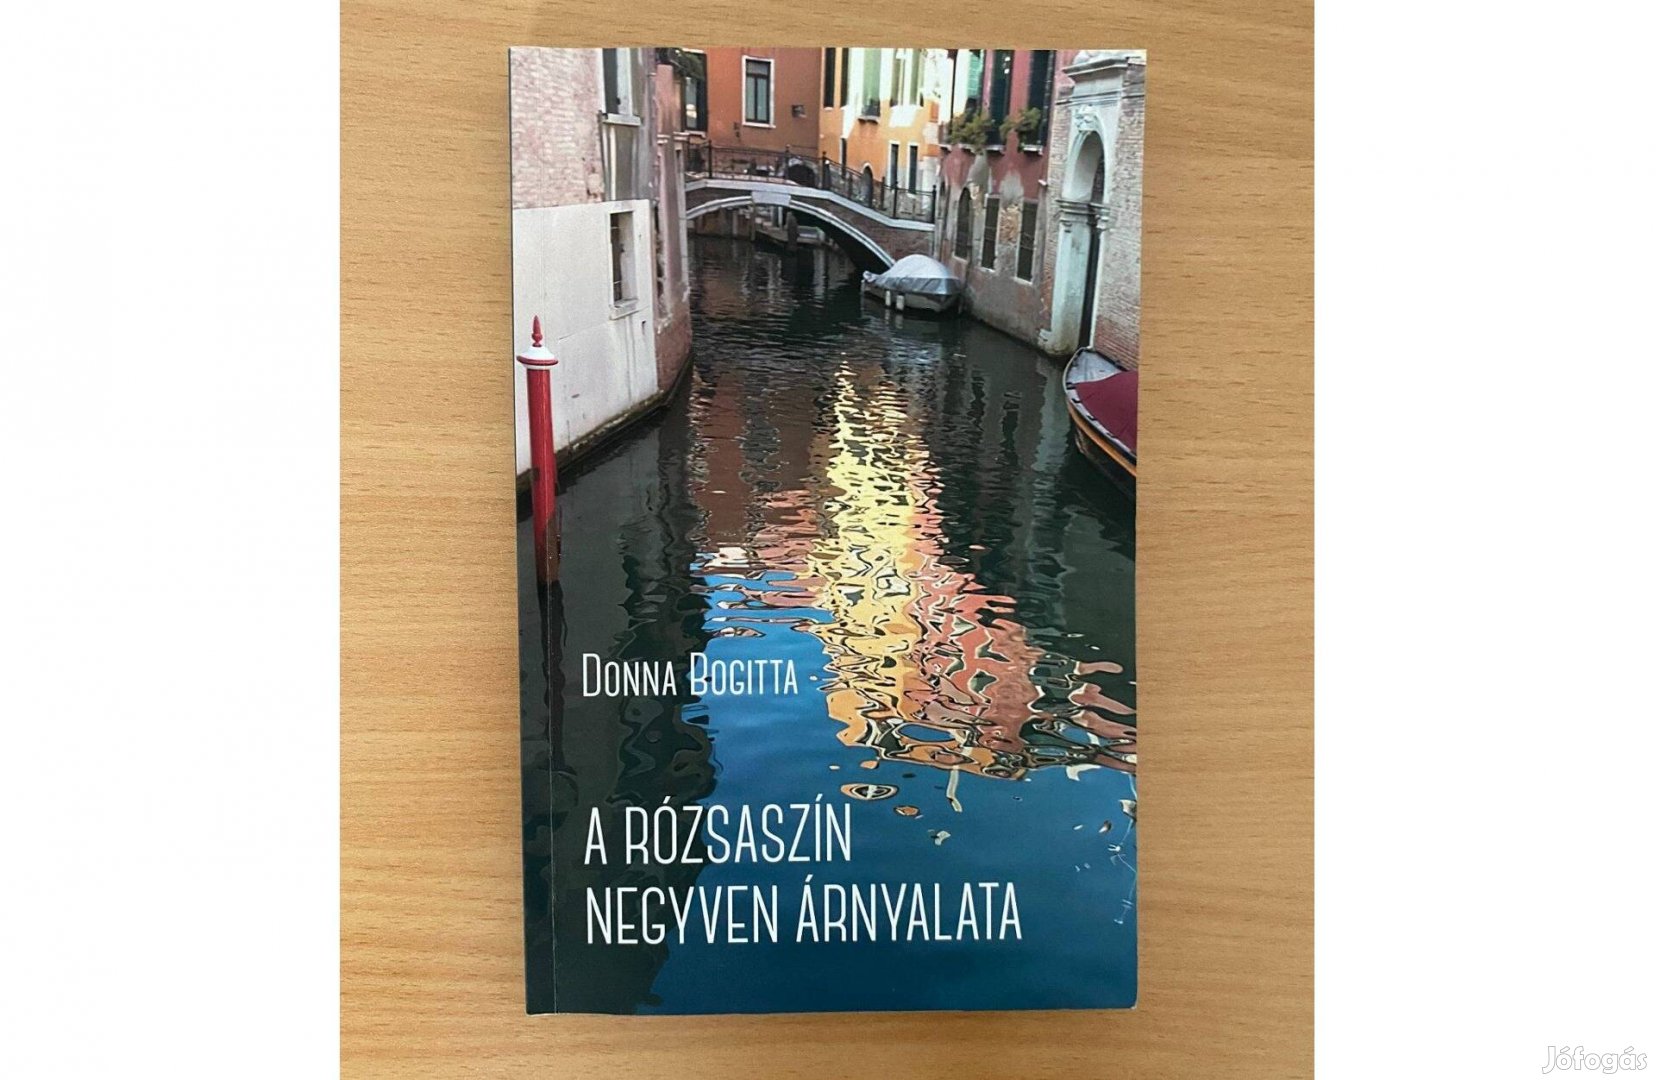 Donna Bogitta: A rózsaszín negyven árnyalata című könyv